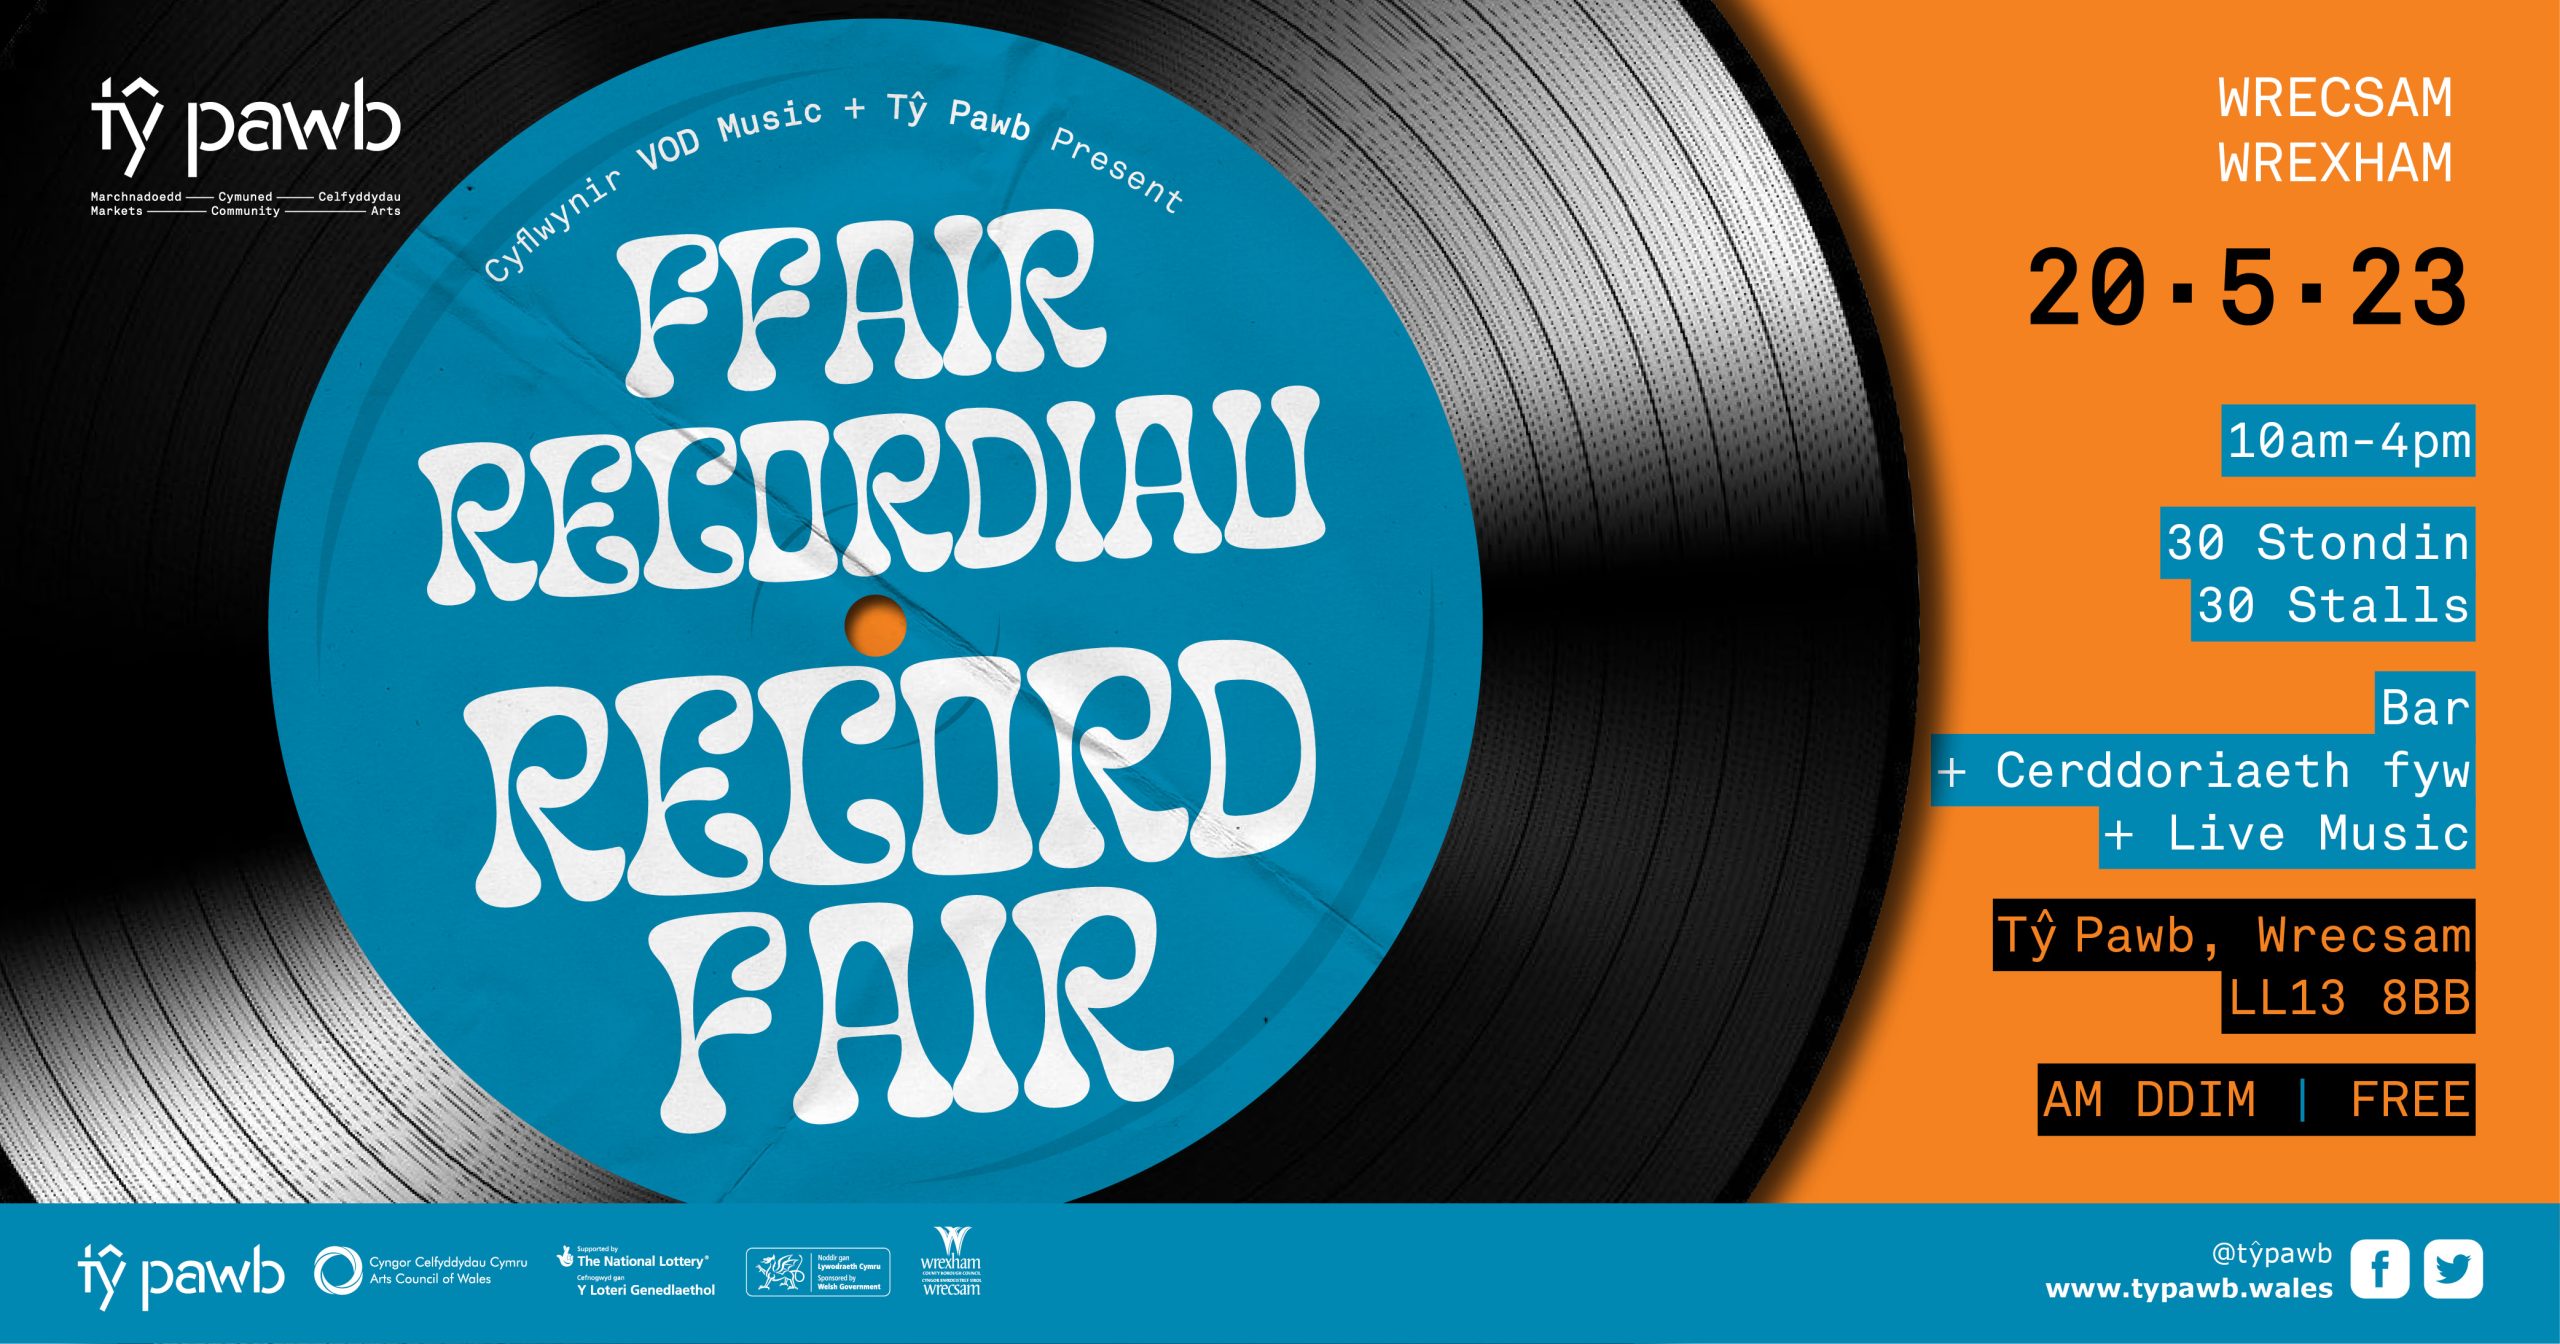 Ffair Recordiau // Record Fair 20.5.23